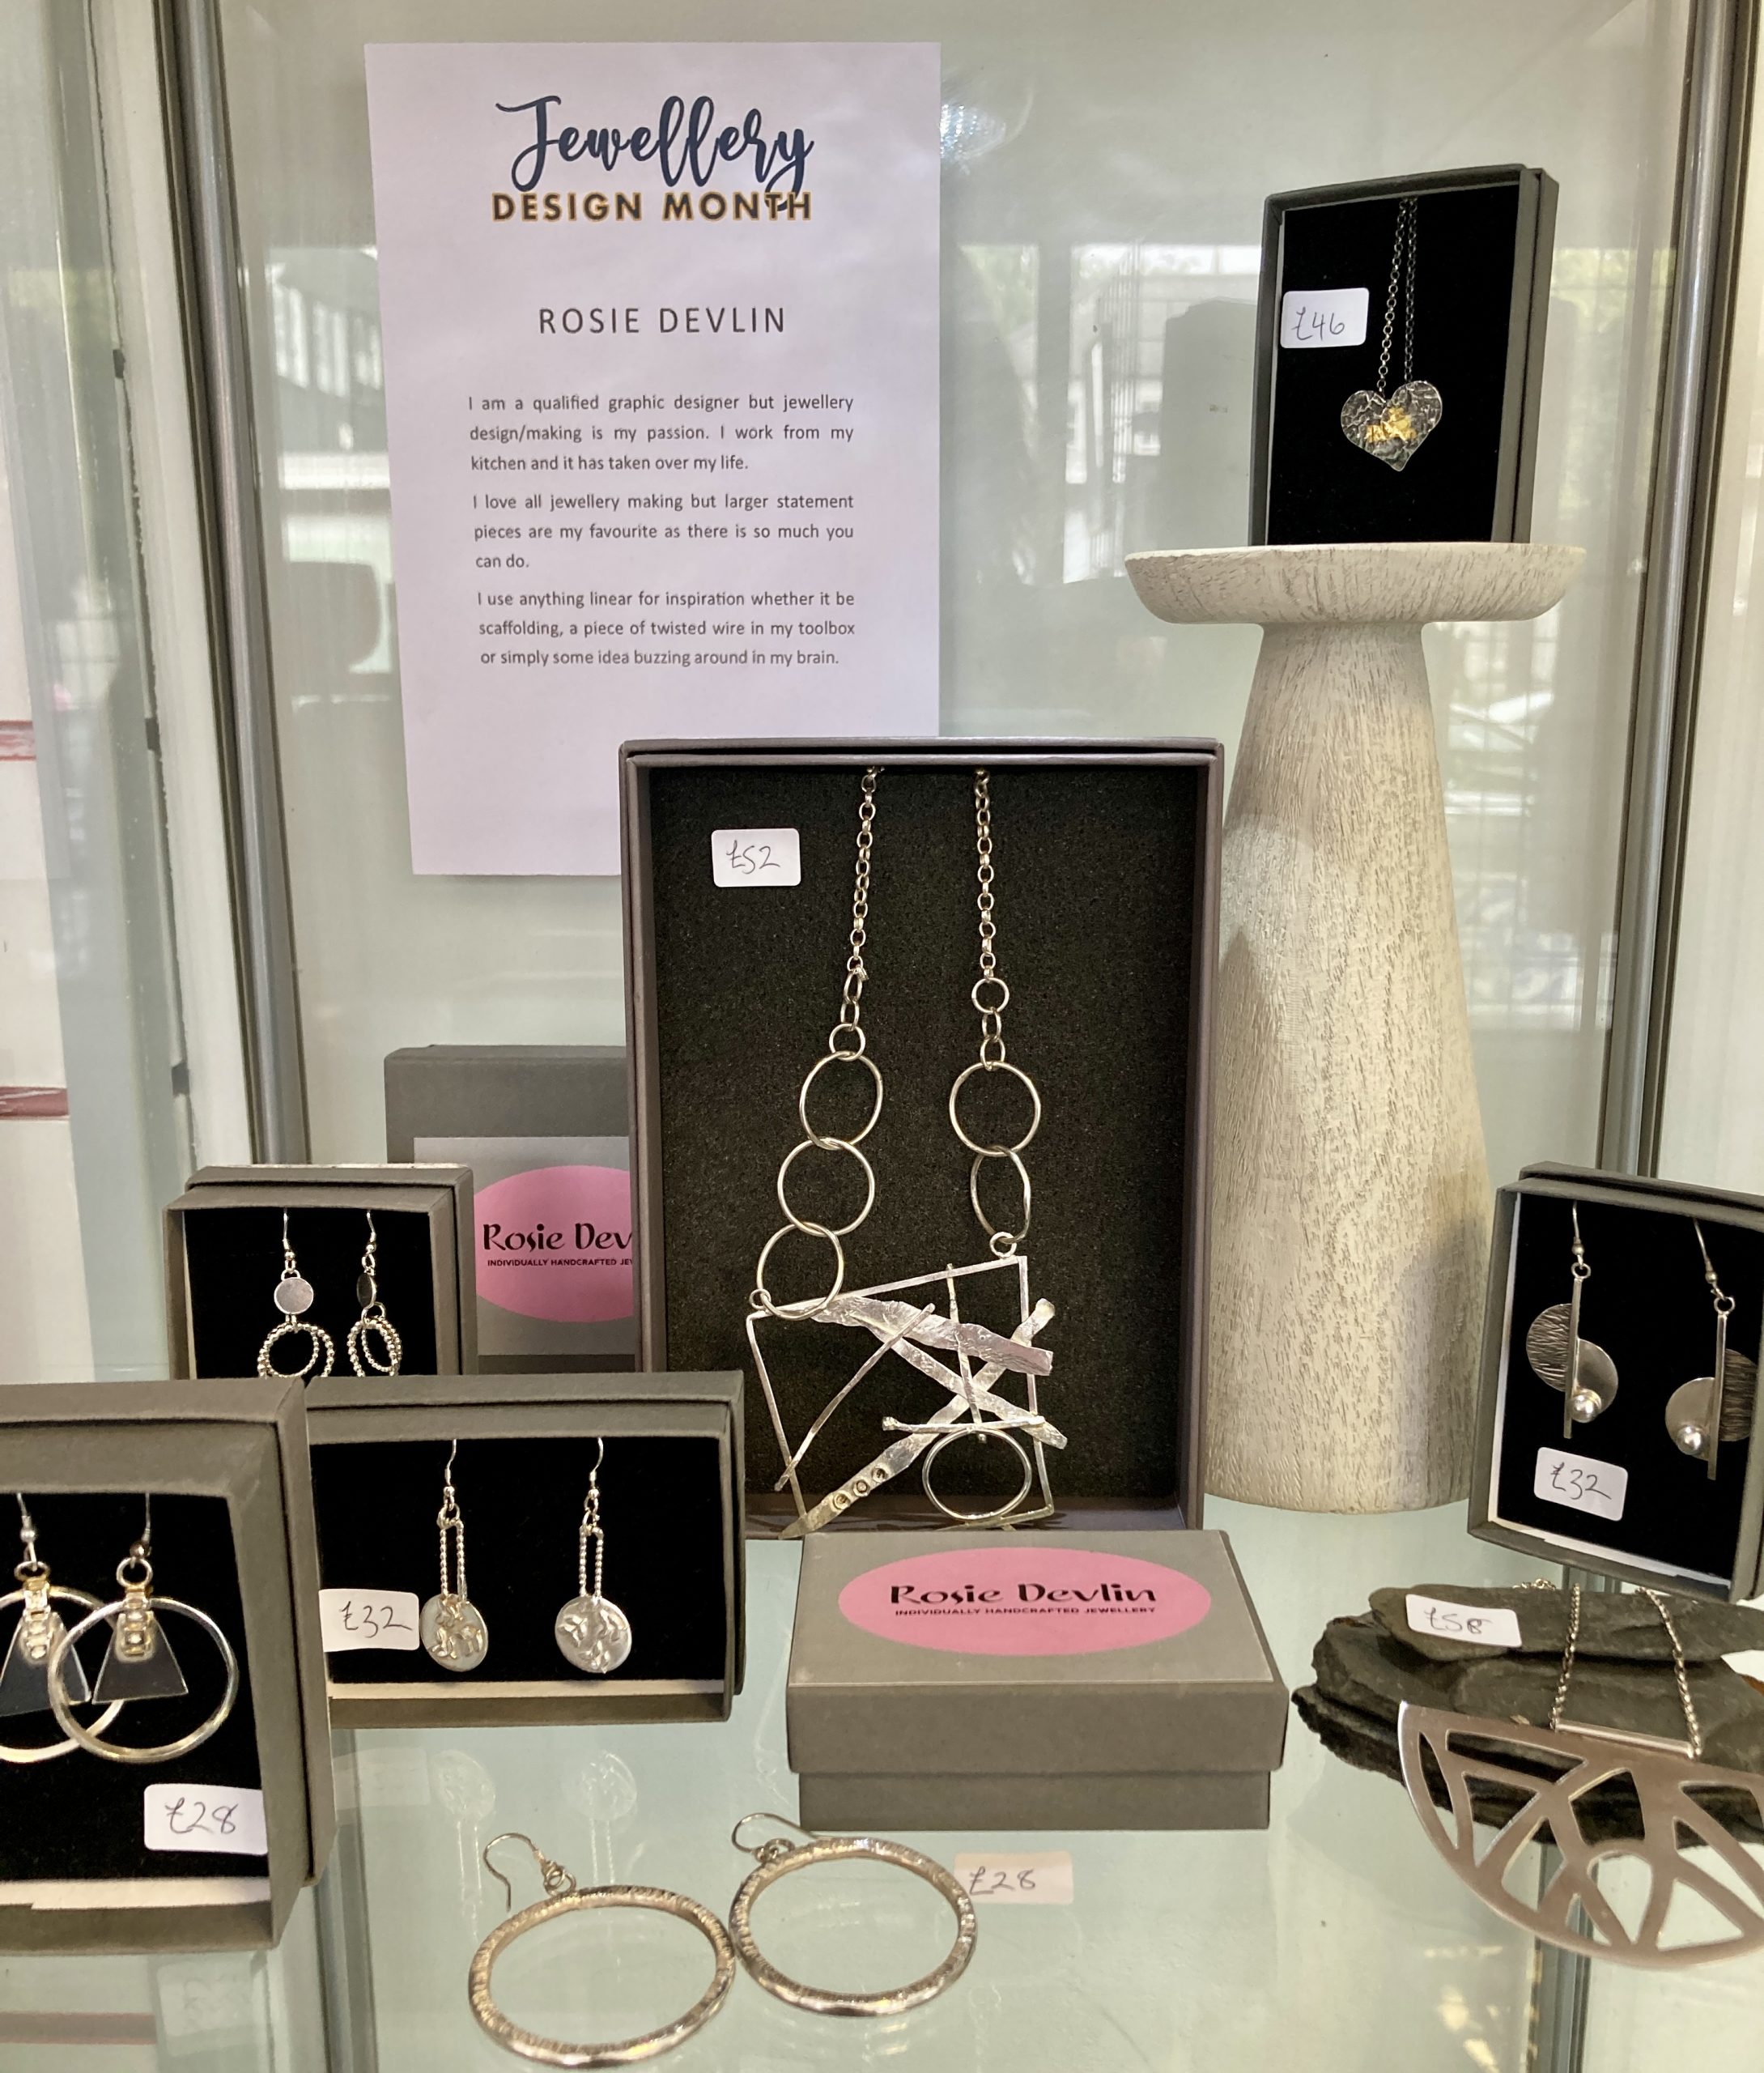 Rosie Devlin - Jewellery Design Month